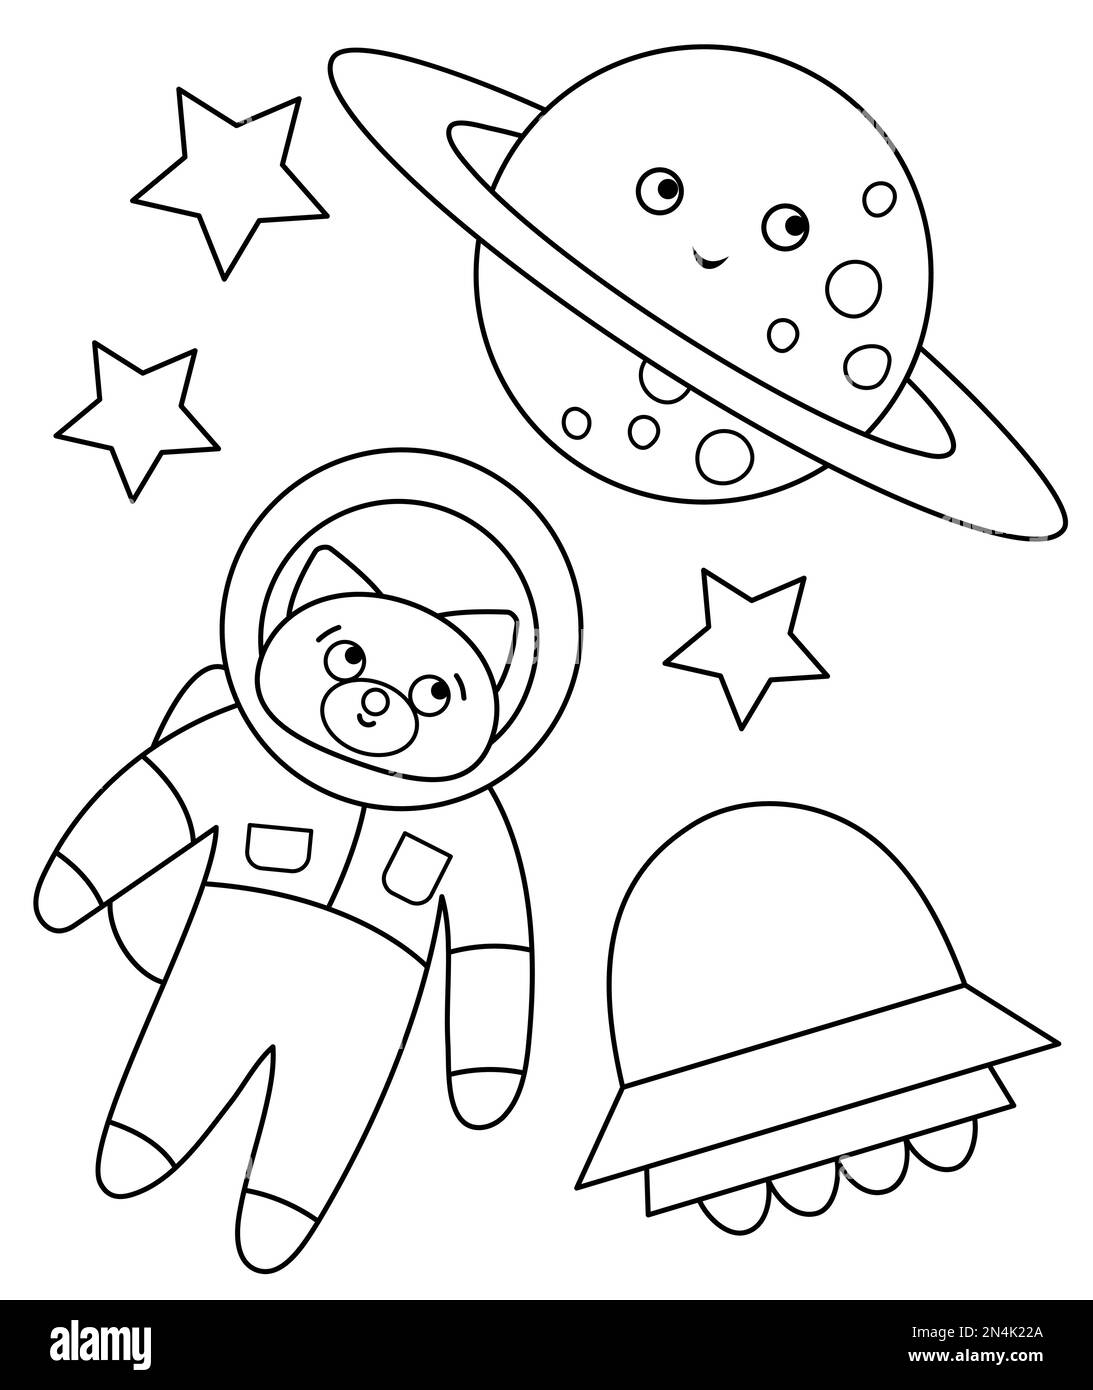 Vektor schwarz-weiß witziger Astronautenfuchs im Weltraum mit Planet, Sternen, UFO. Süße kosmische Illustration für Kinder. Astronomie-Malseite mit kawai Stock Vektor